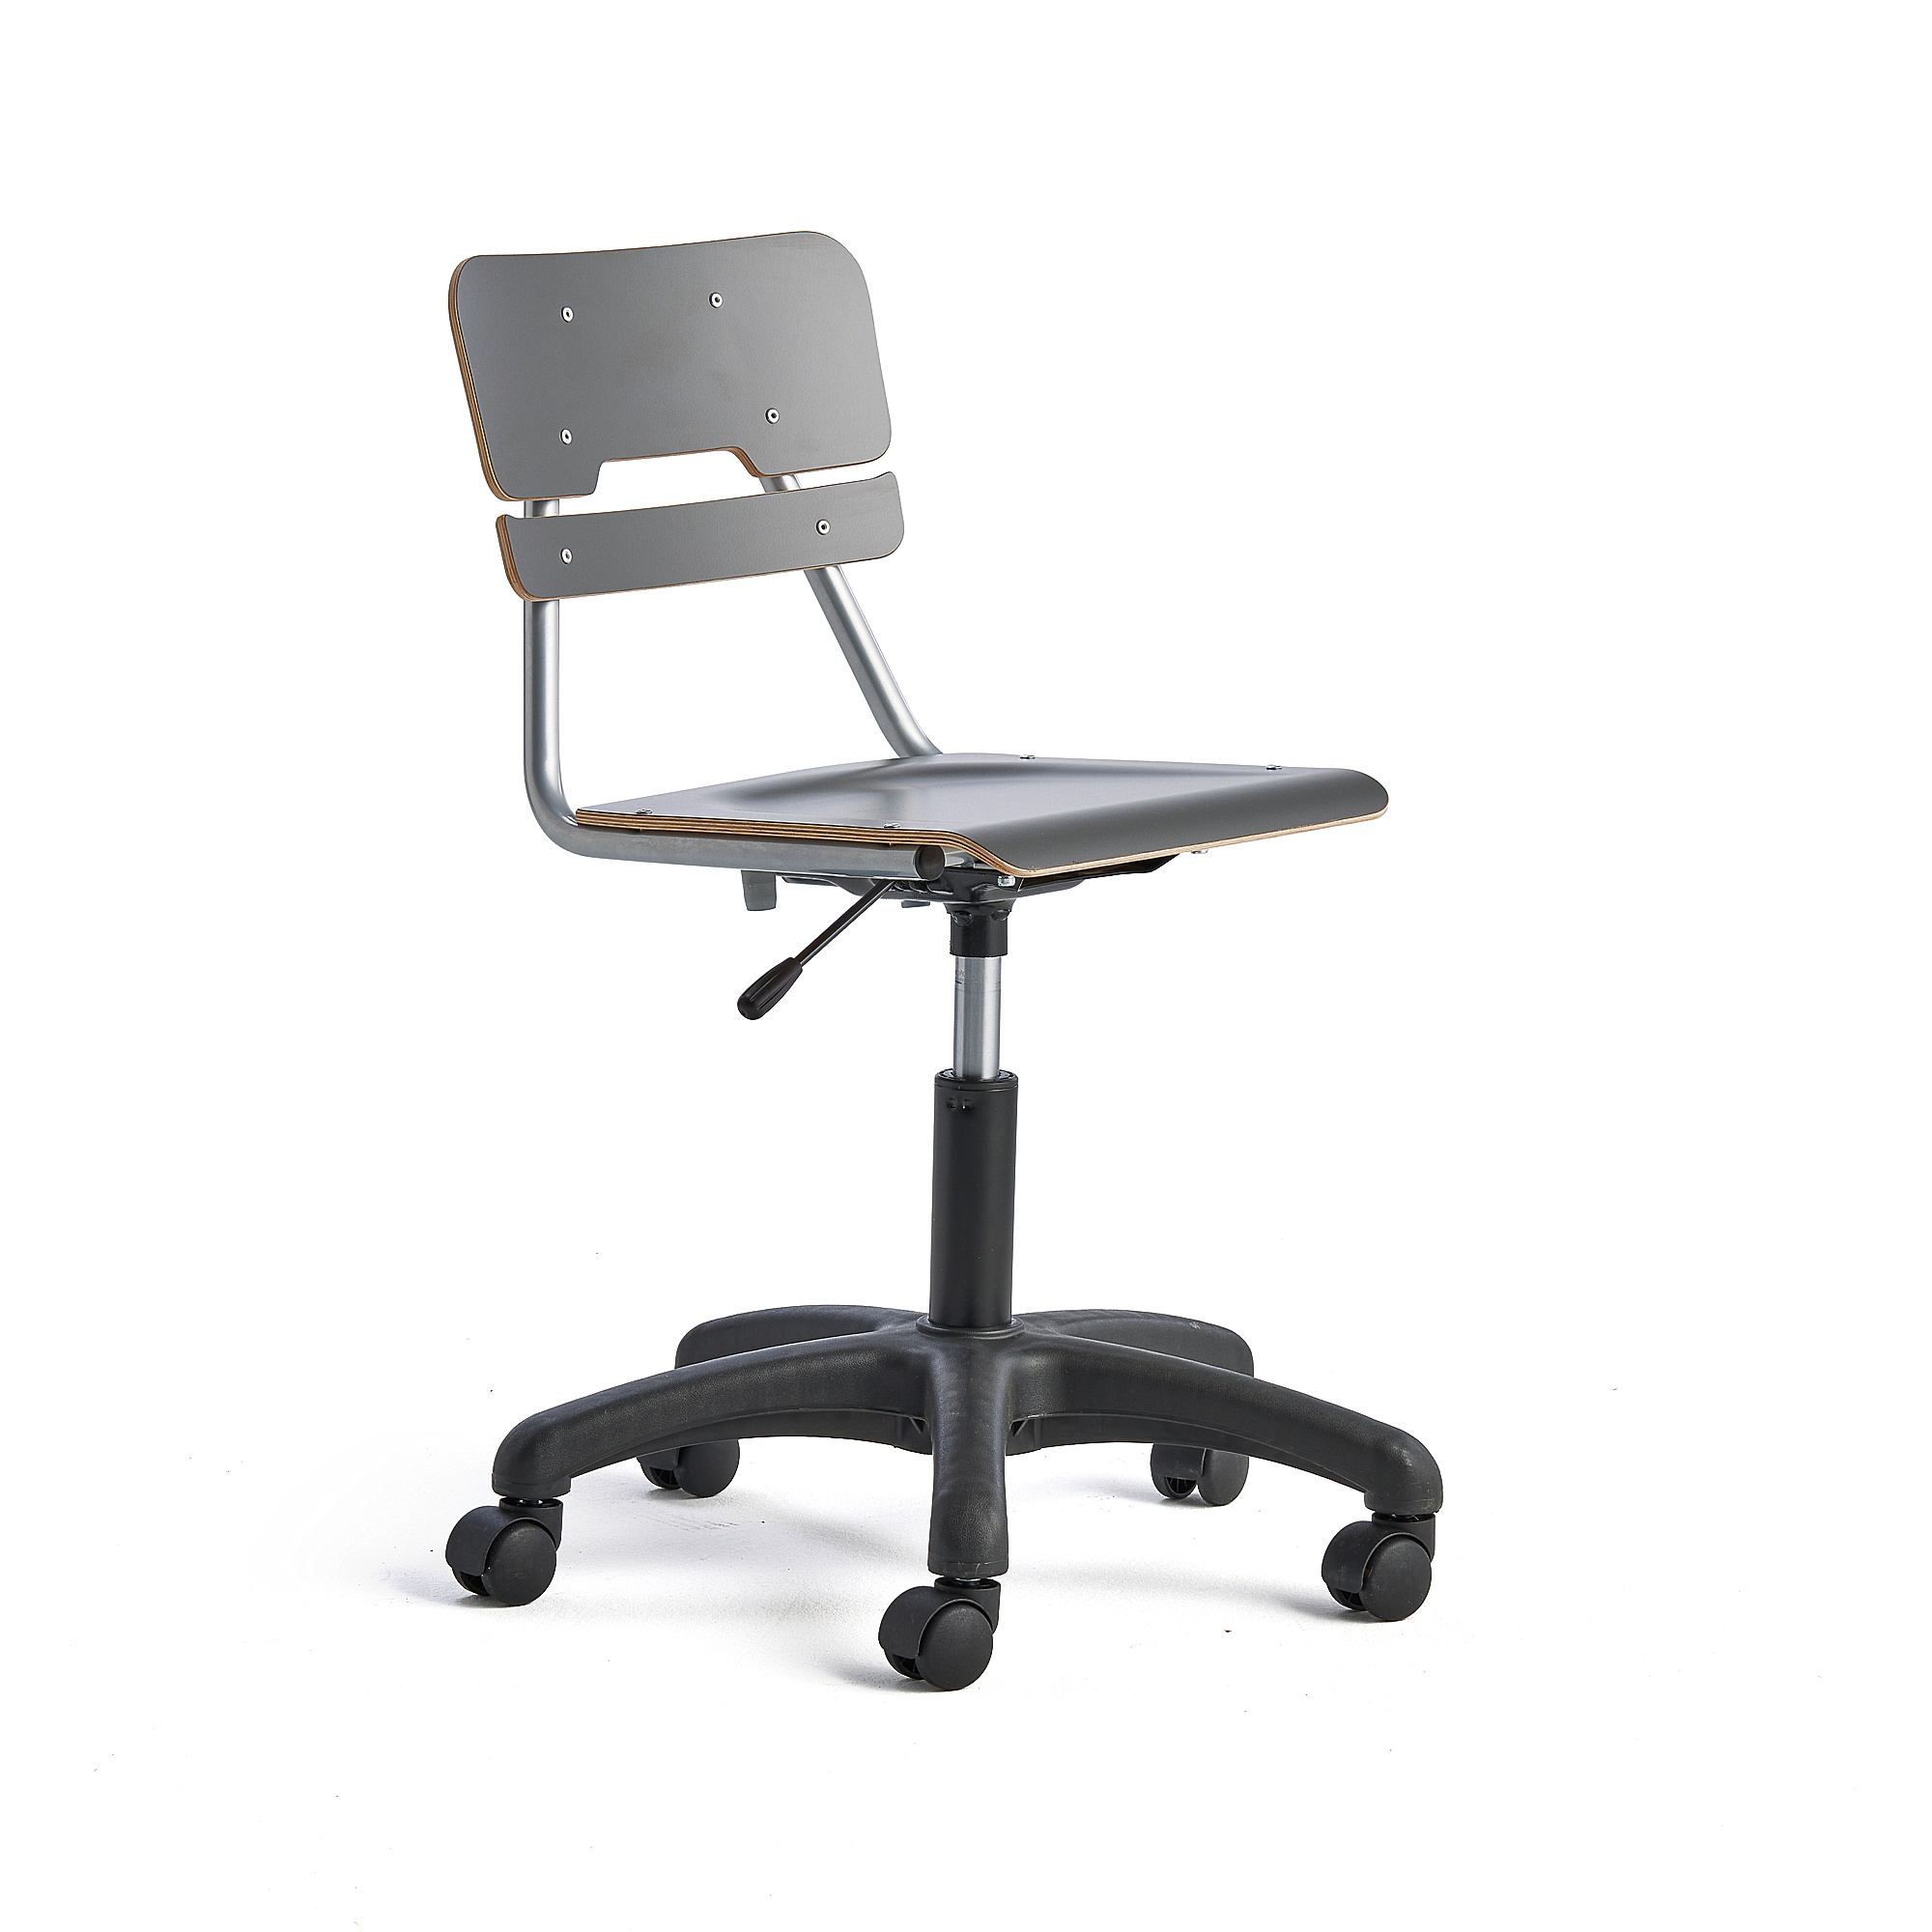 Otočná židle LEGERE, malý sedák, s kolečky, nastavitelná výška 430-550 mm, antracitově šedá